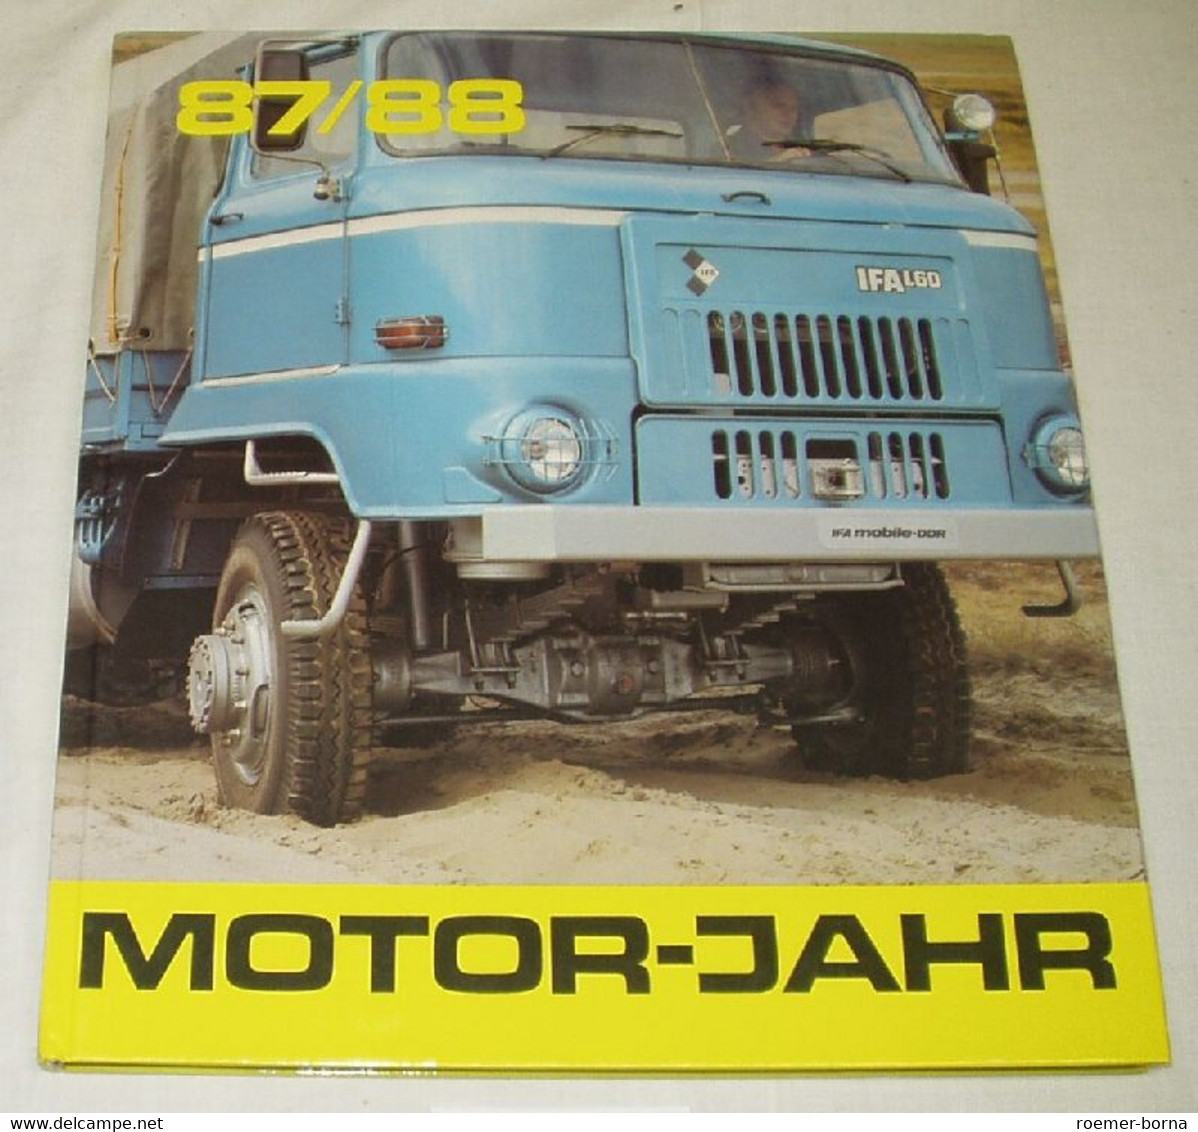 Motor-Jahr 87/88 - Eine Internationale Revue. - Técnico